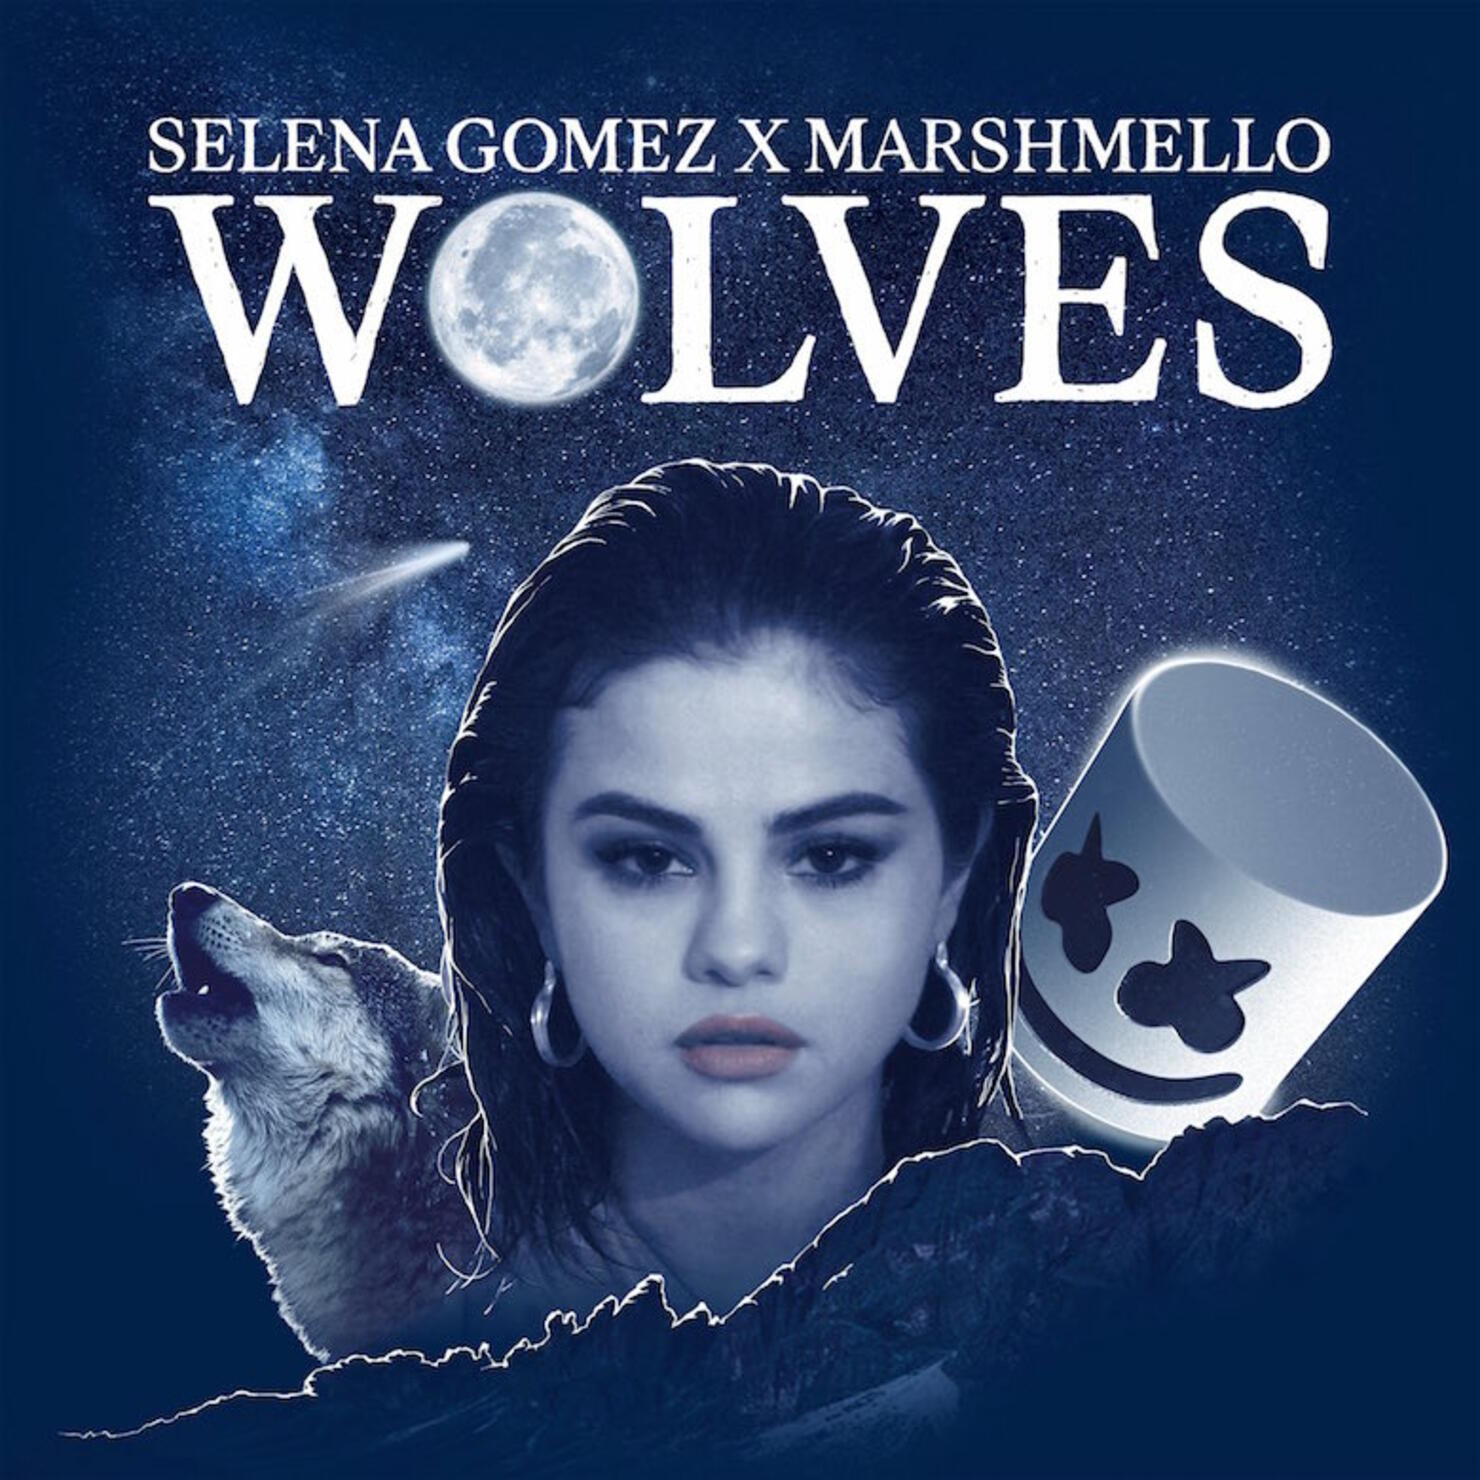 Selena Gomez x Marshmello - "Wolves"